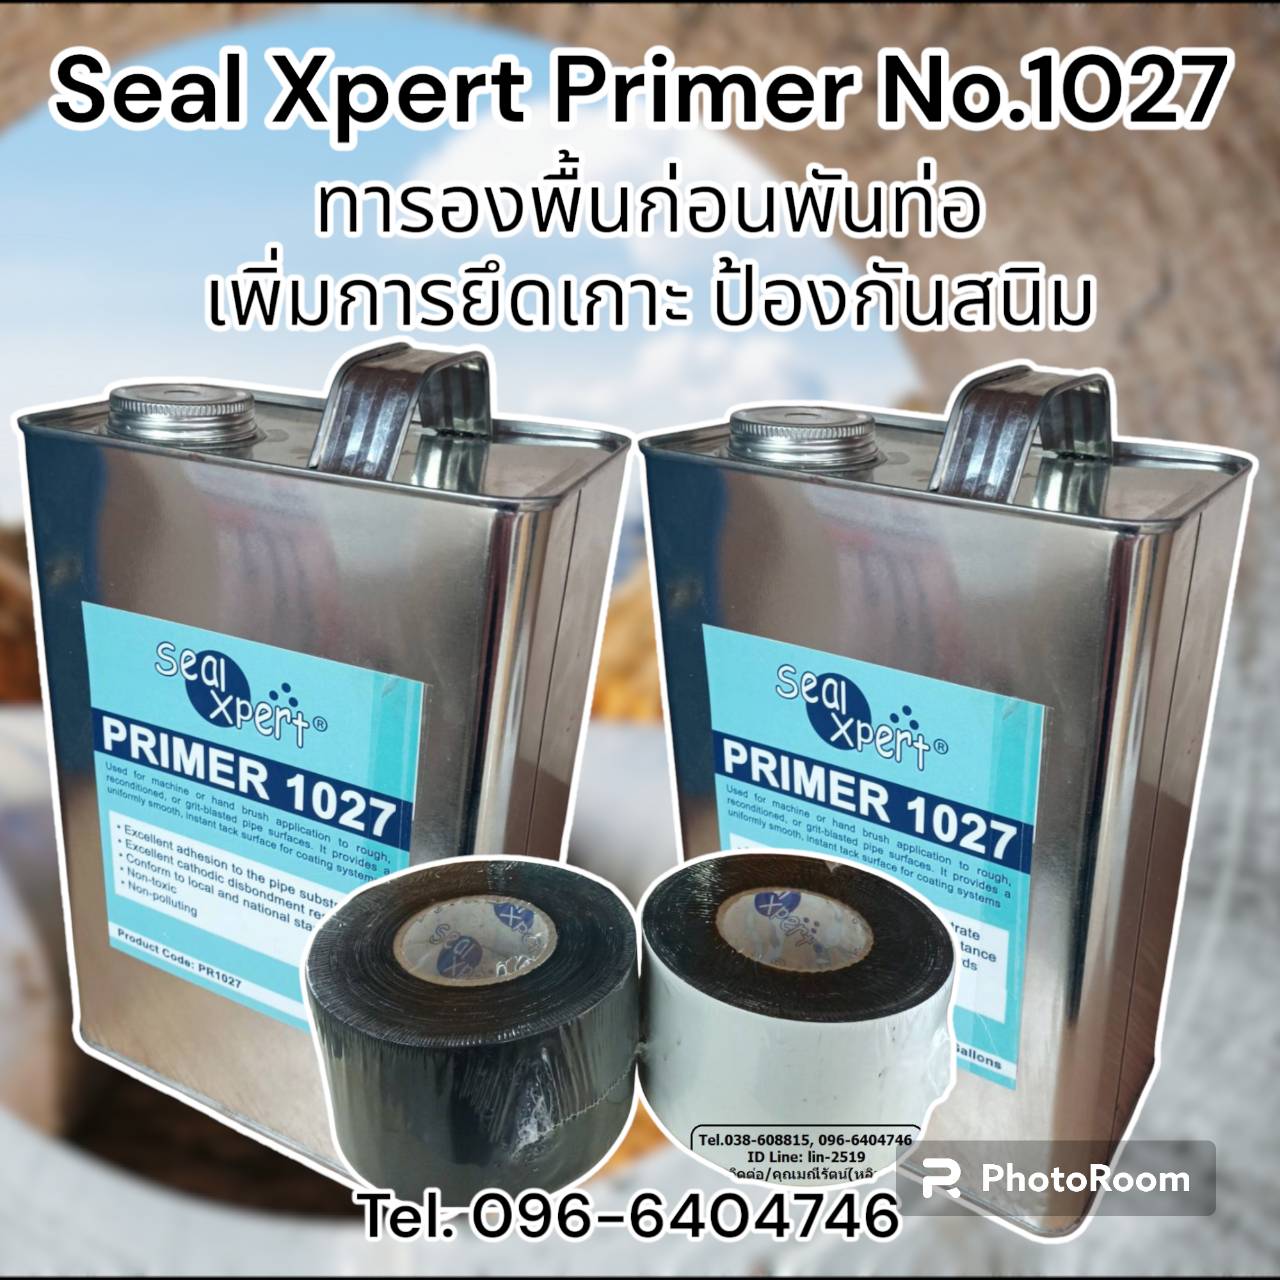 รูปภาพ น้ำยาทารองพื้นก่อนพันท่อ Seal Xpert Primer No.1027 ป้องกันสนิม ป้องกันความชื้น และช่วยเพิ่มการยึดเกาะของเทปพันท่อใต้ดิน